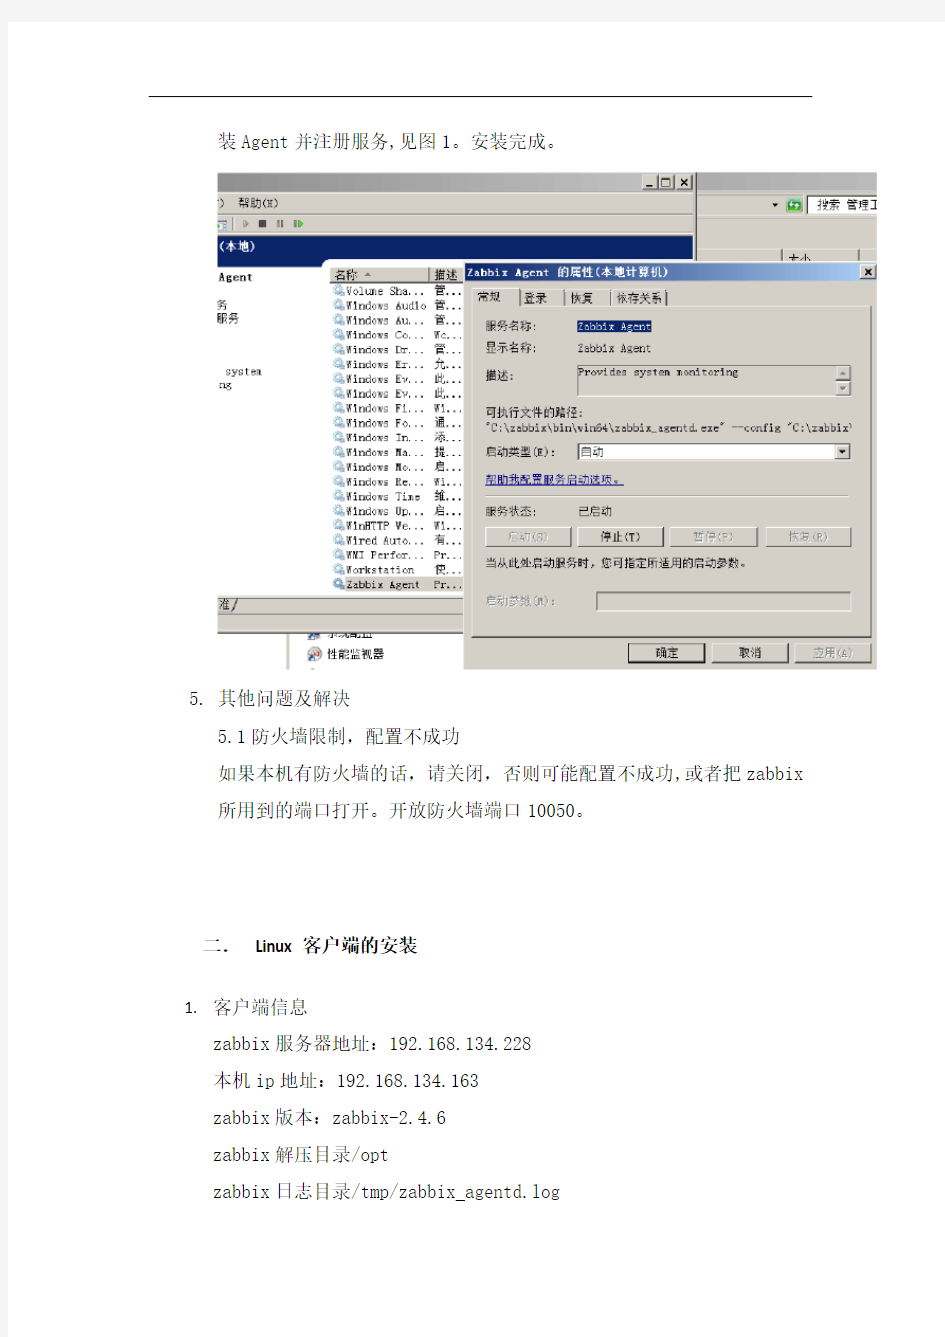 zabbix2.4.6客户端安装手册